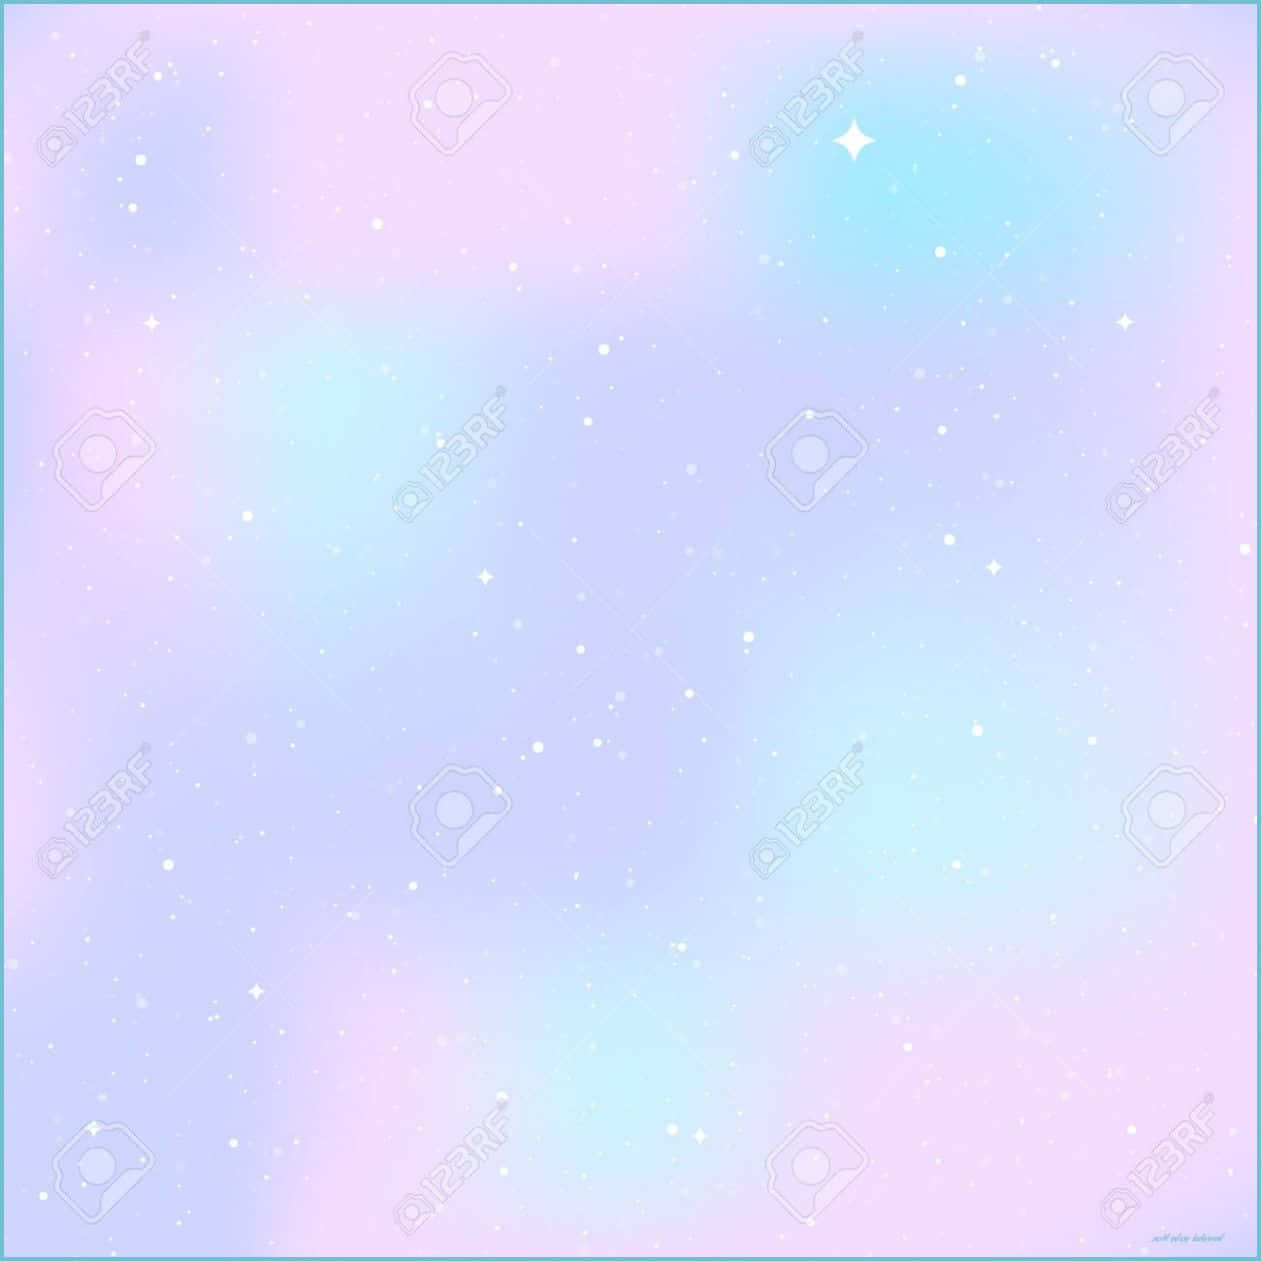 Experienciala Belleza Del Cosmos Con Este Impresionante Wallpaper De Cute Pastel Galaxy. Fondo de pantalla